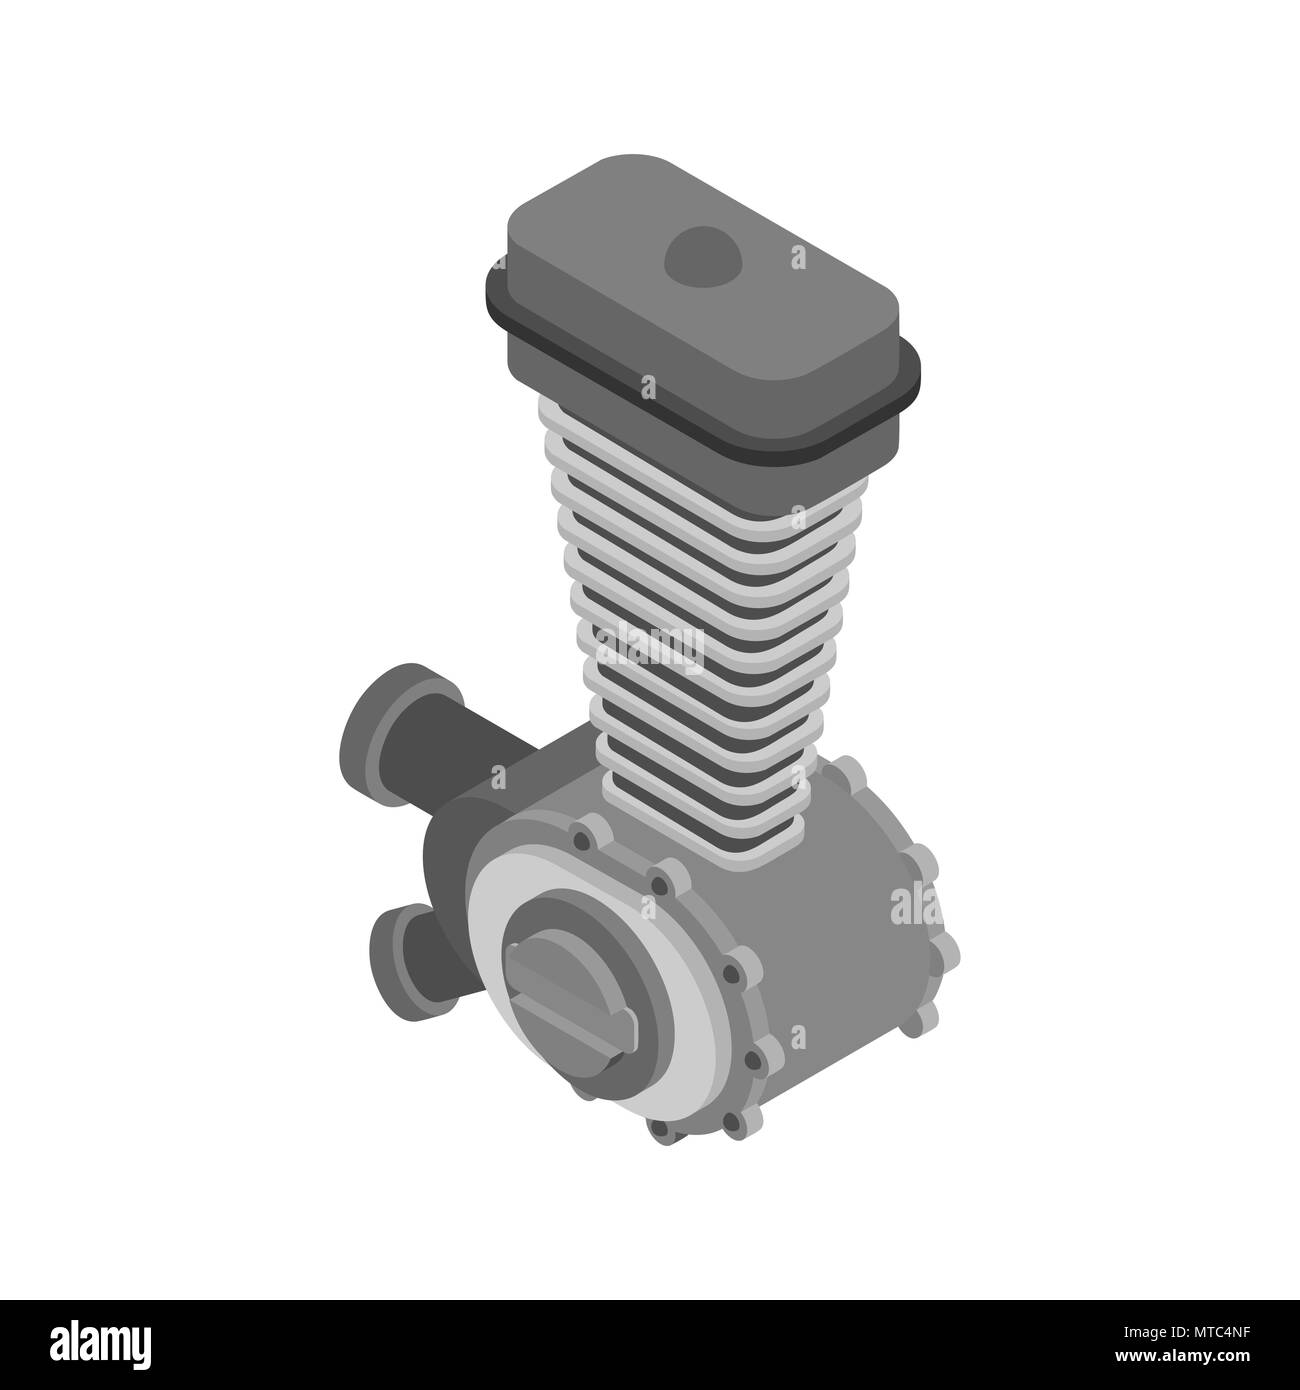 V8 Car Engine Cartoon Illustration Outline: ilustrações stock 177457106